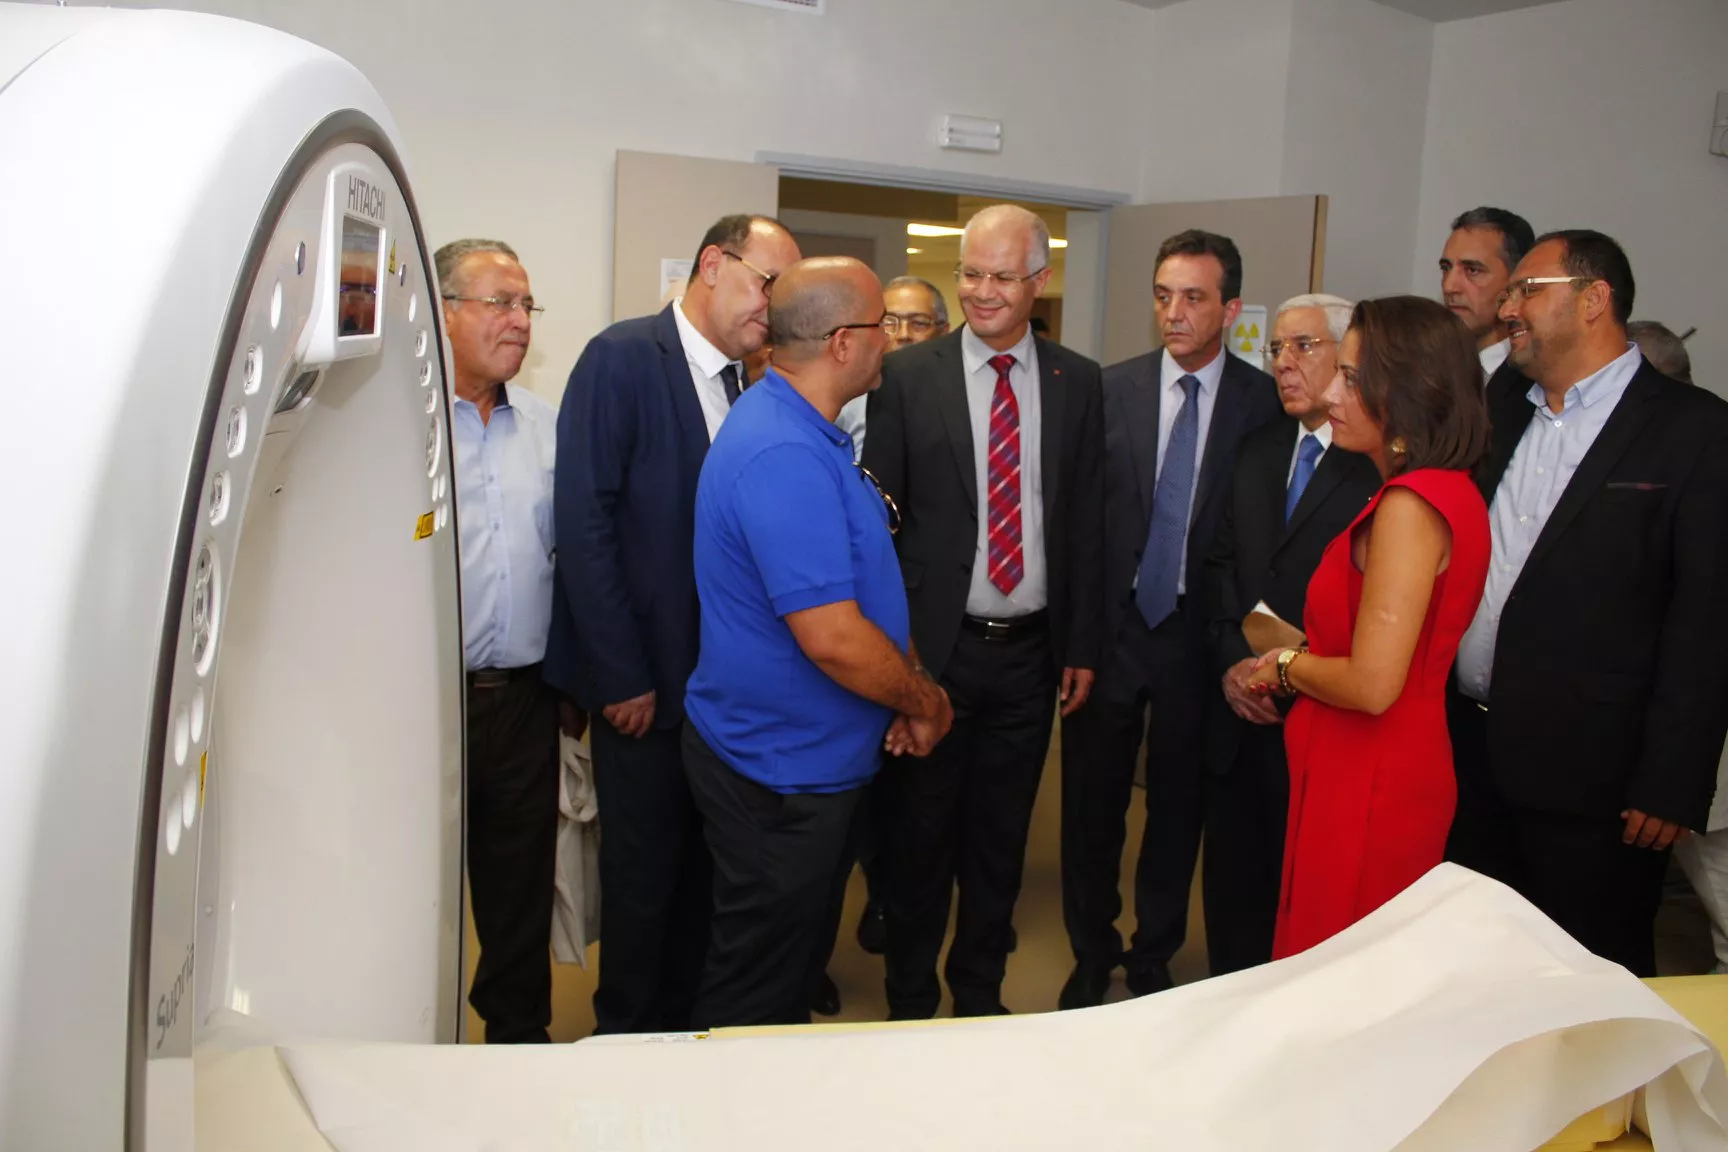 Inauguration de la Clinique La Rose  avec une première en Tunisie IRM ouverte